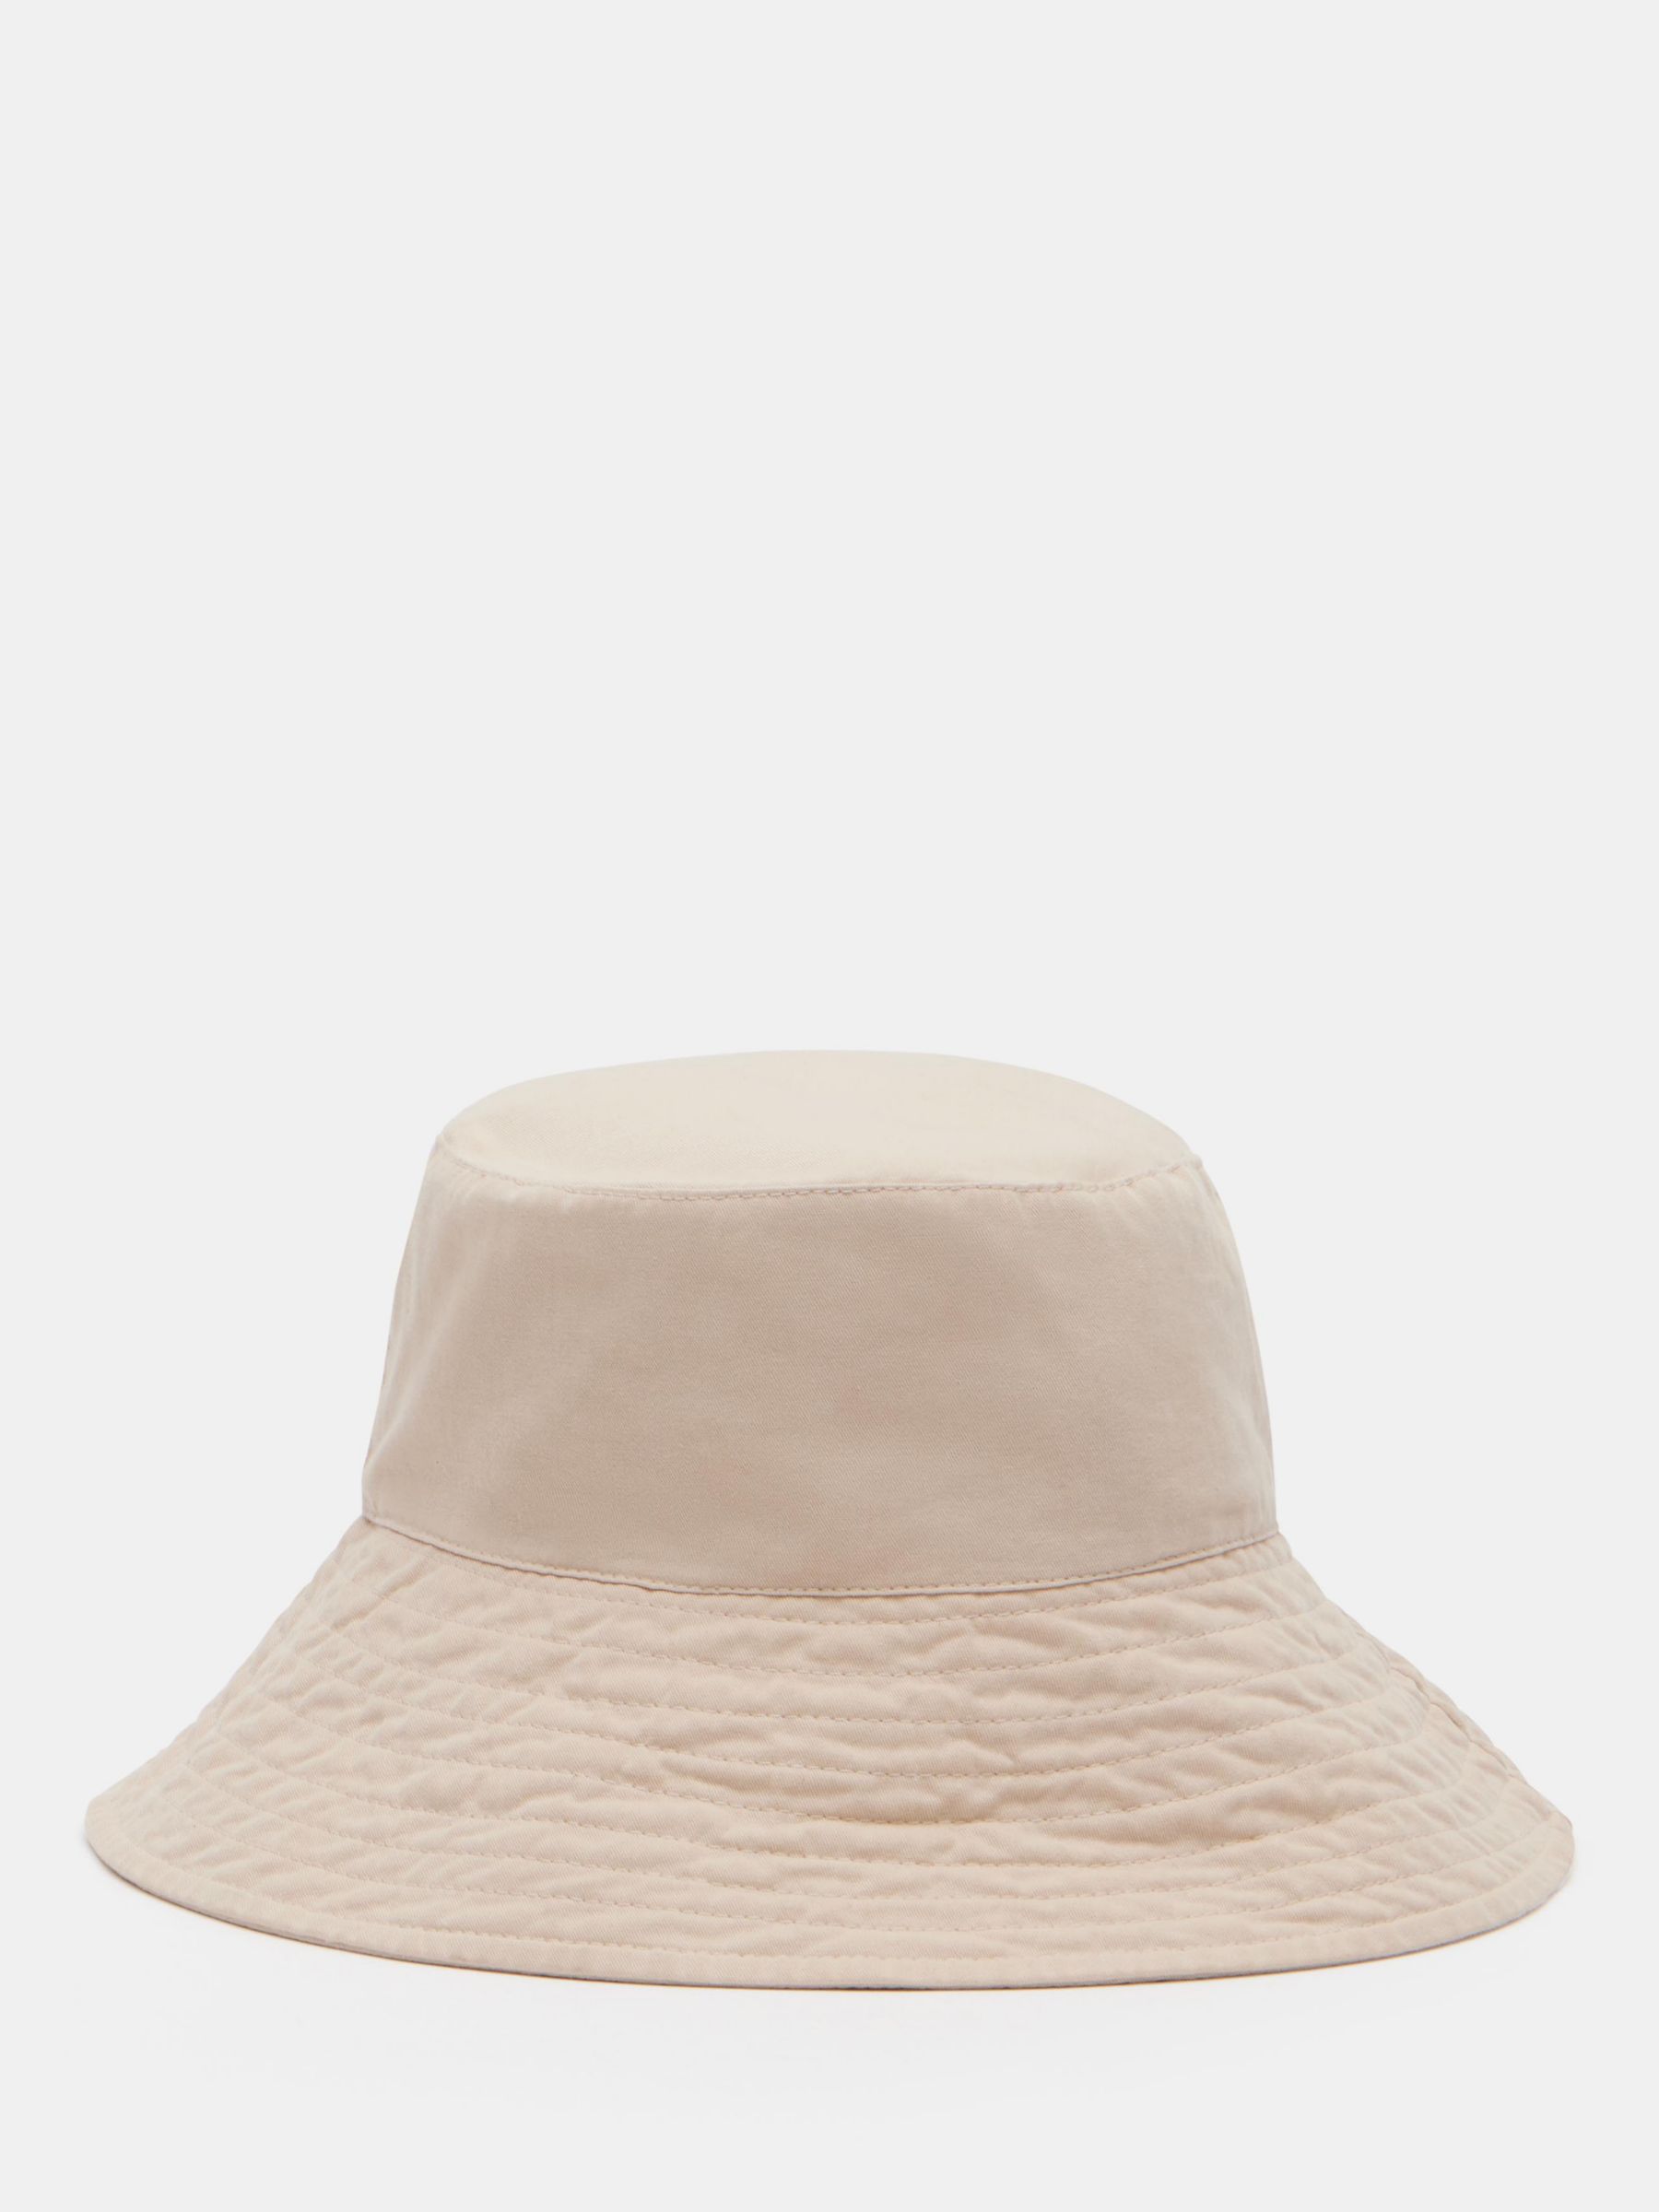 HUSH Billie Bucket Hat, Ecru, One Size